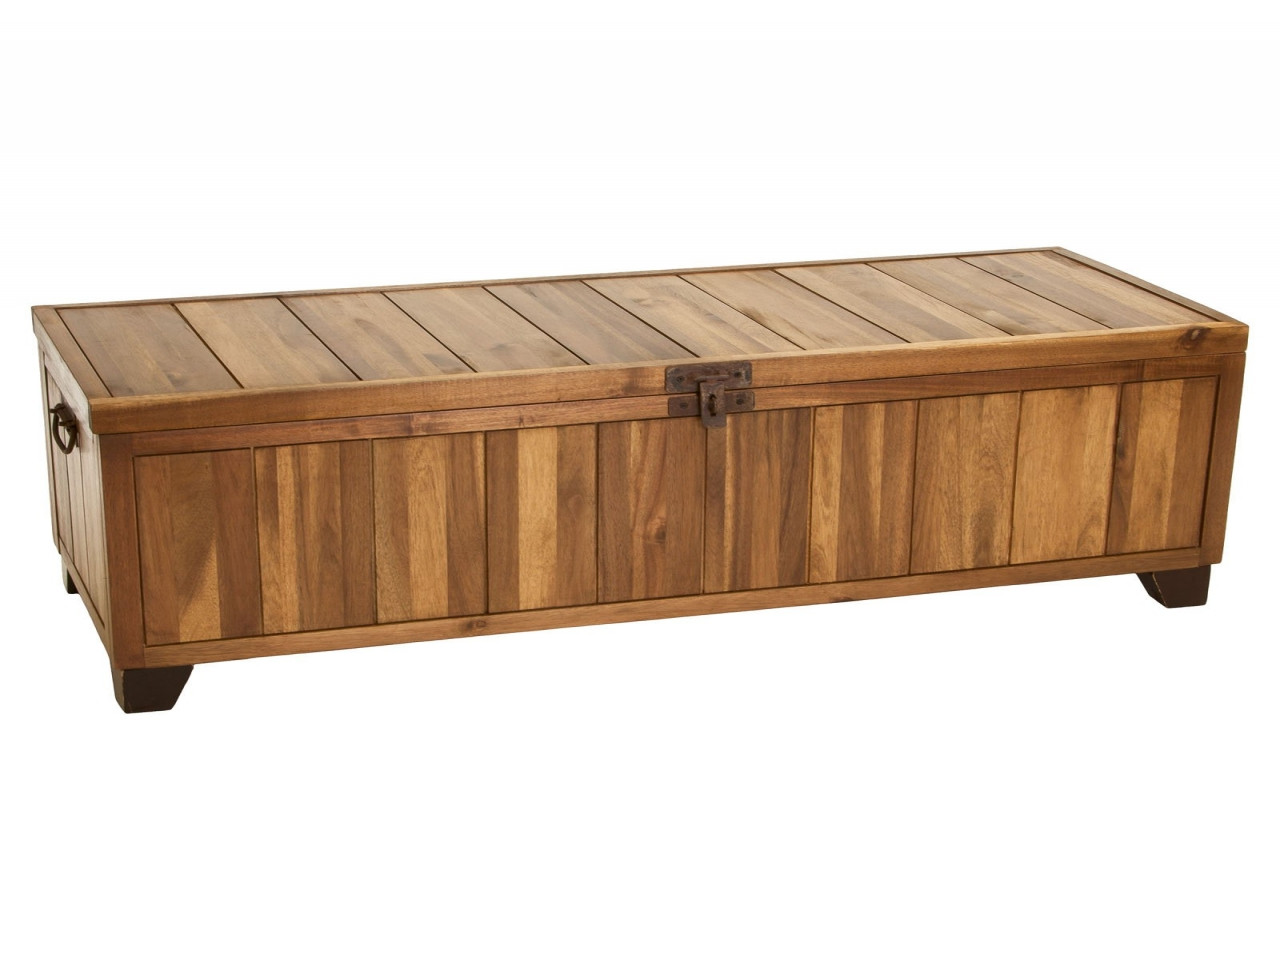 Wooden Storage Benches Indoor
 Wooden storage benches indoor storage ottoman bench jada